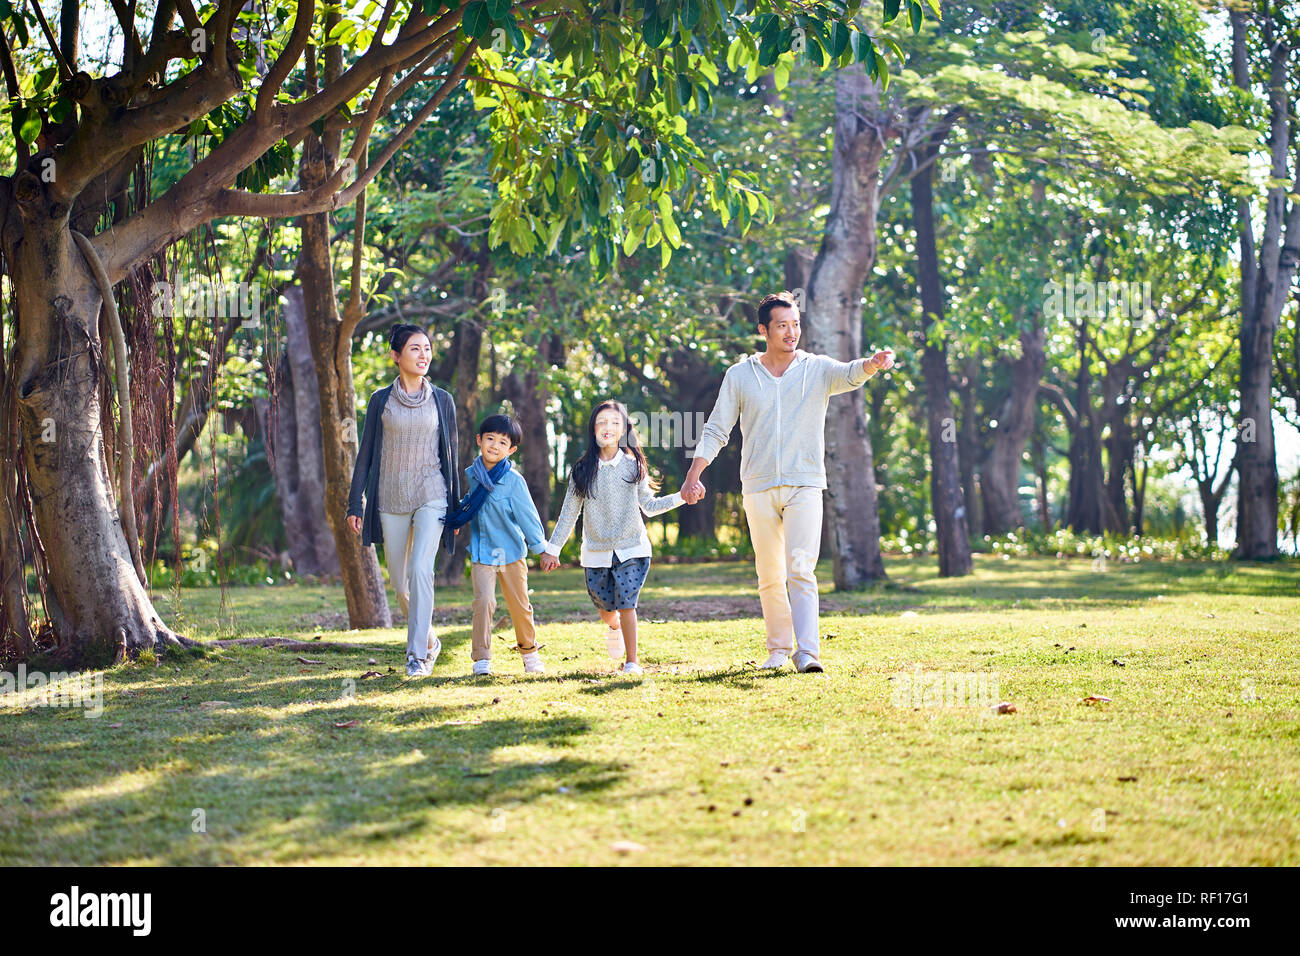 Famiglia asiatica con due figli che camminano mano nella mano all'aperto nel parco. Foto Stock